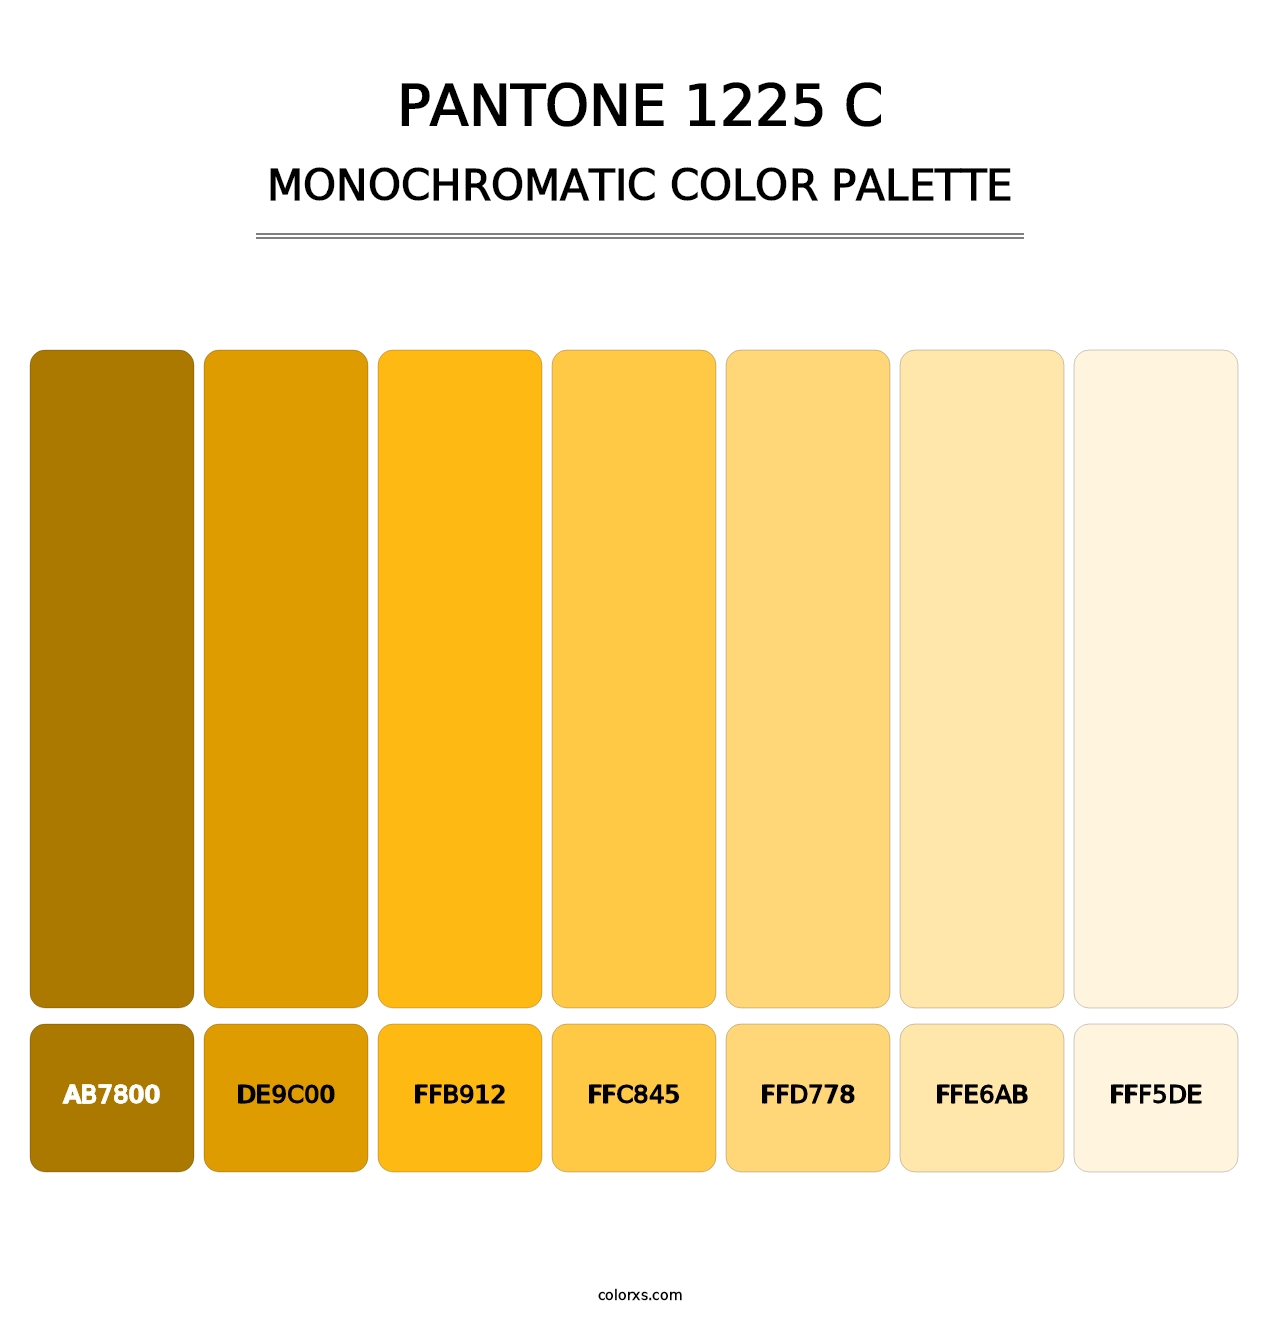 PANTONE 1225 C - Monochromatic Color Palette